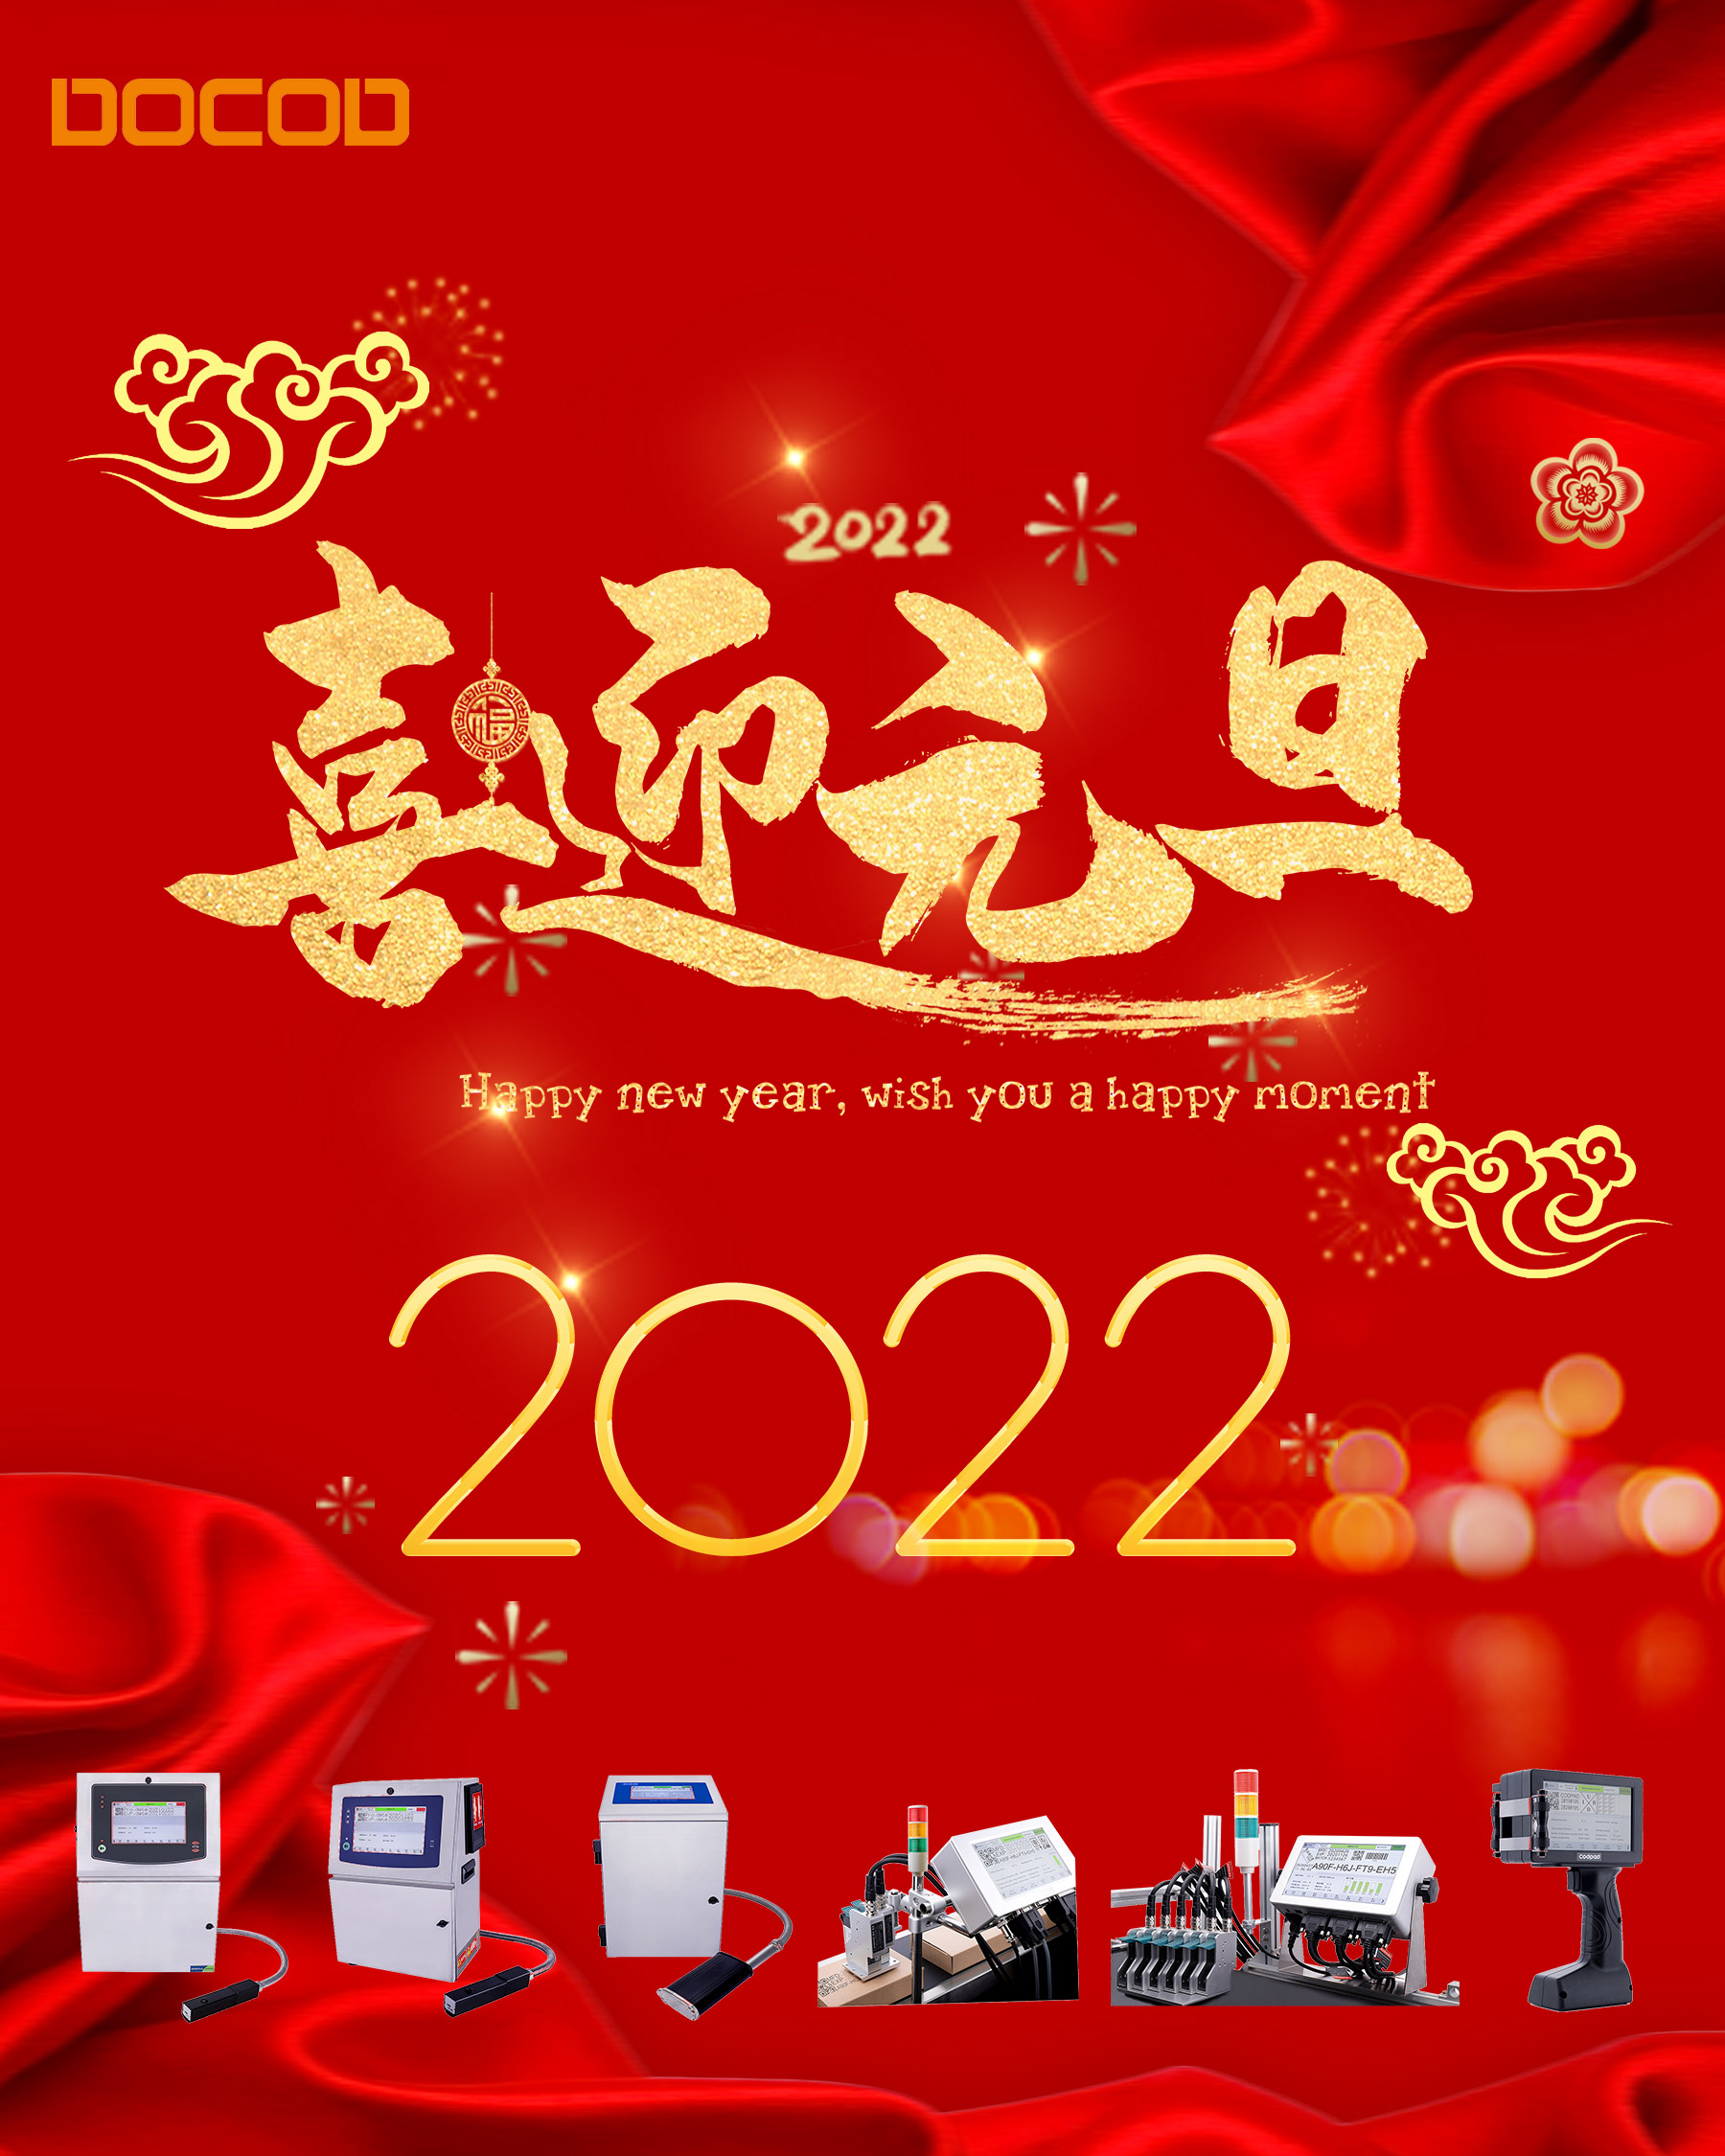 2022年 新年快乐 平安喜乐